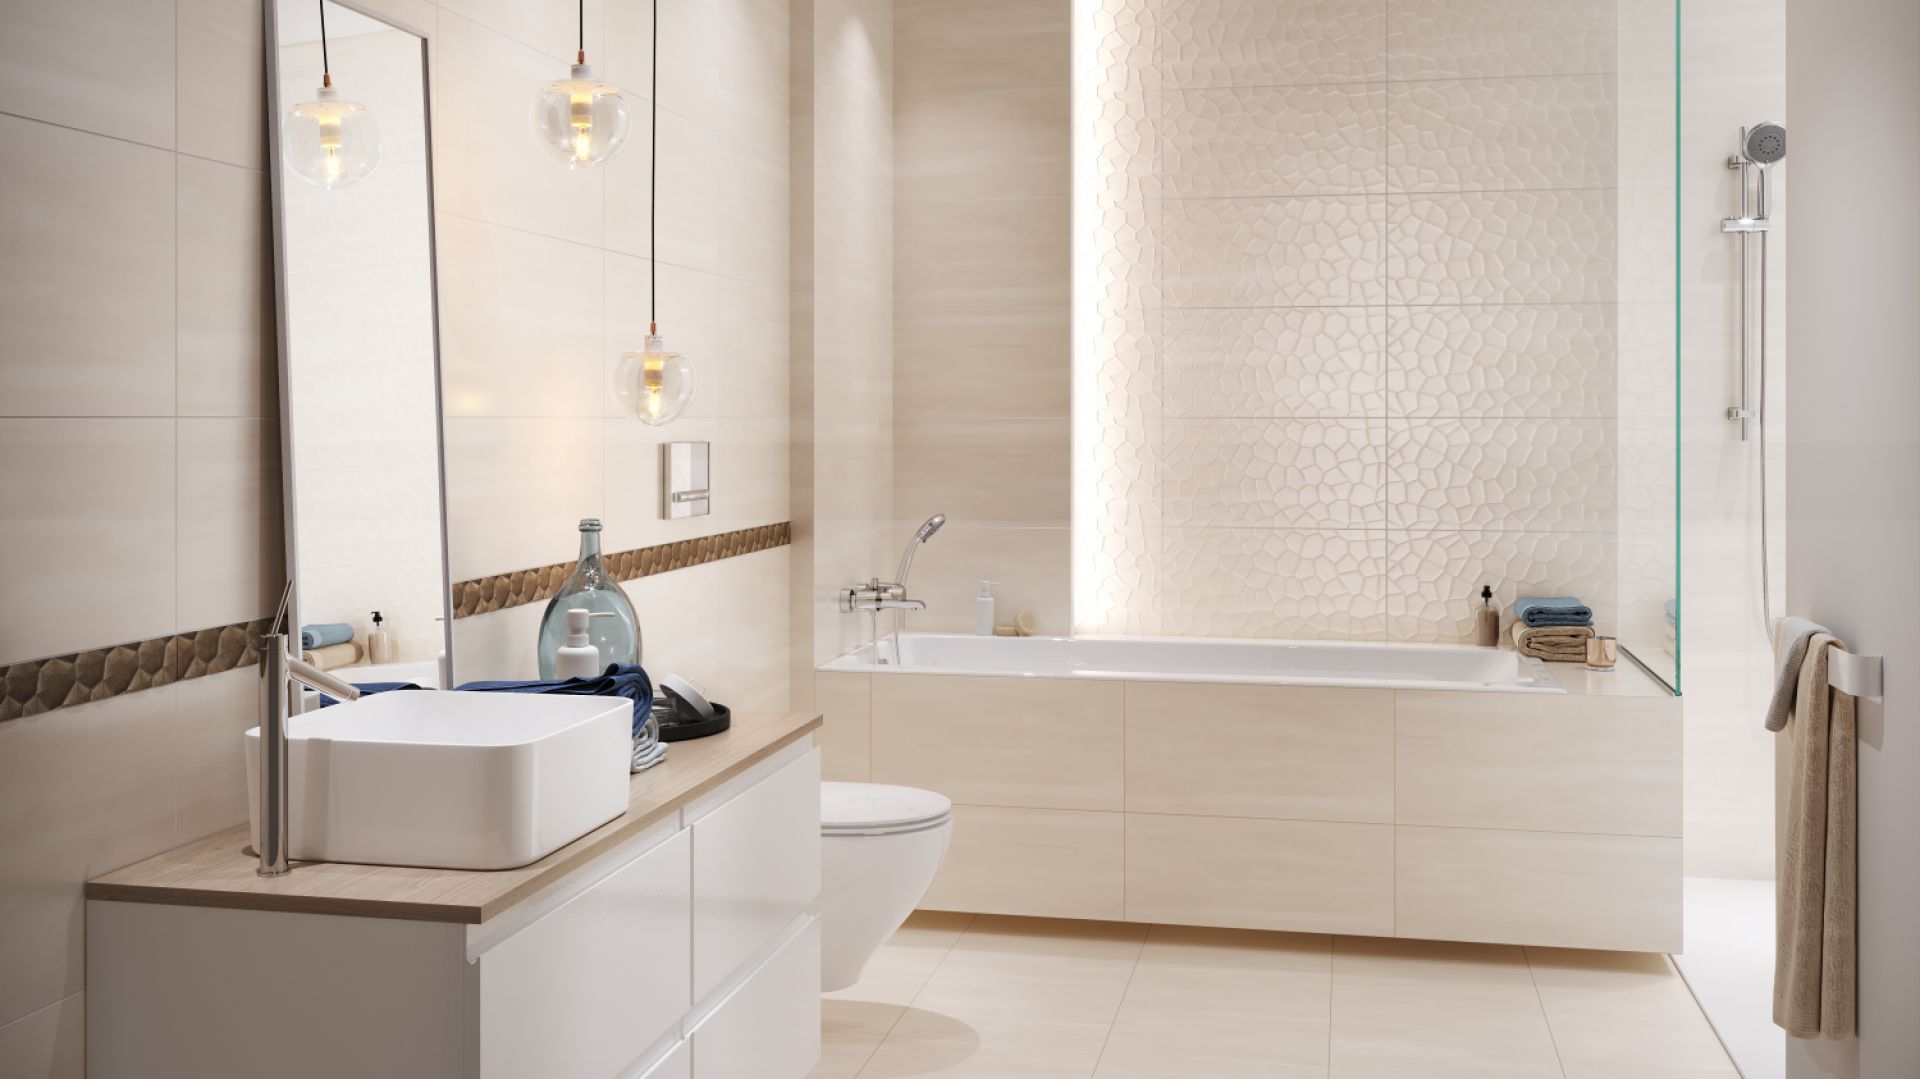 Komfortowa i przytulna łazienka: urządzamy domową przestrzeń relaksu